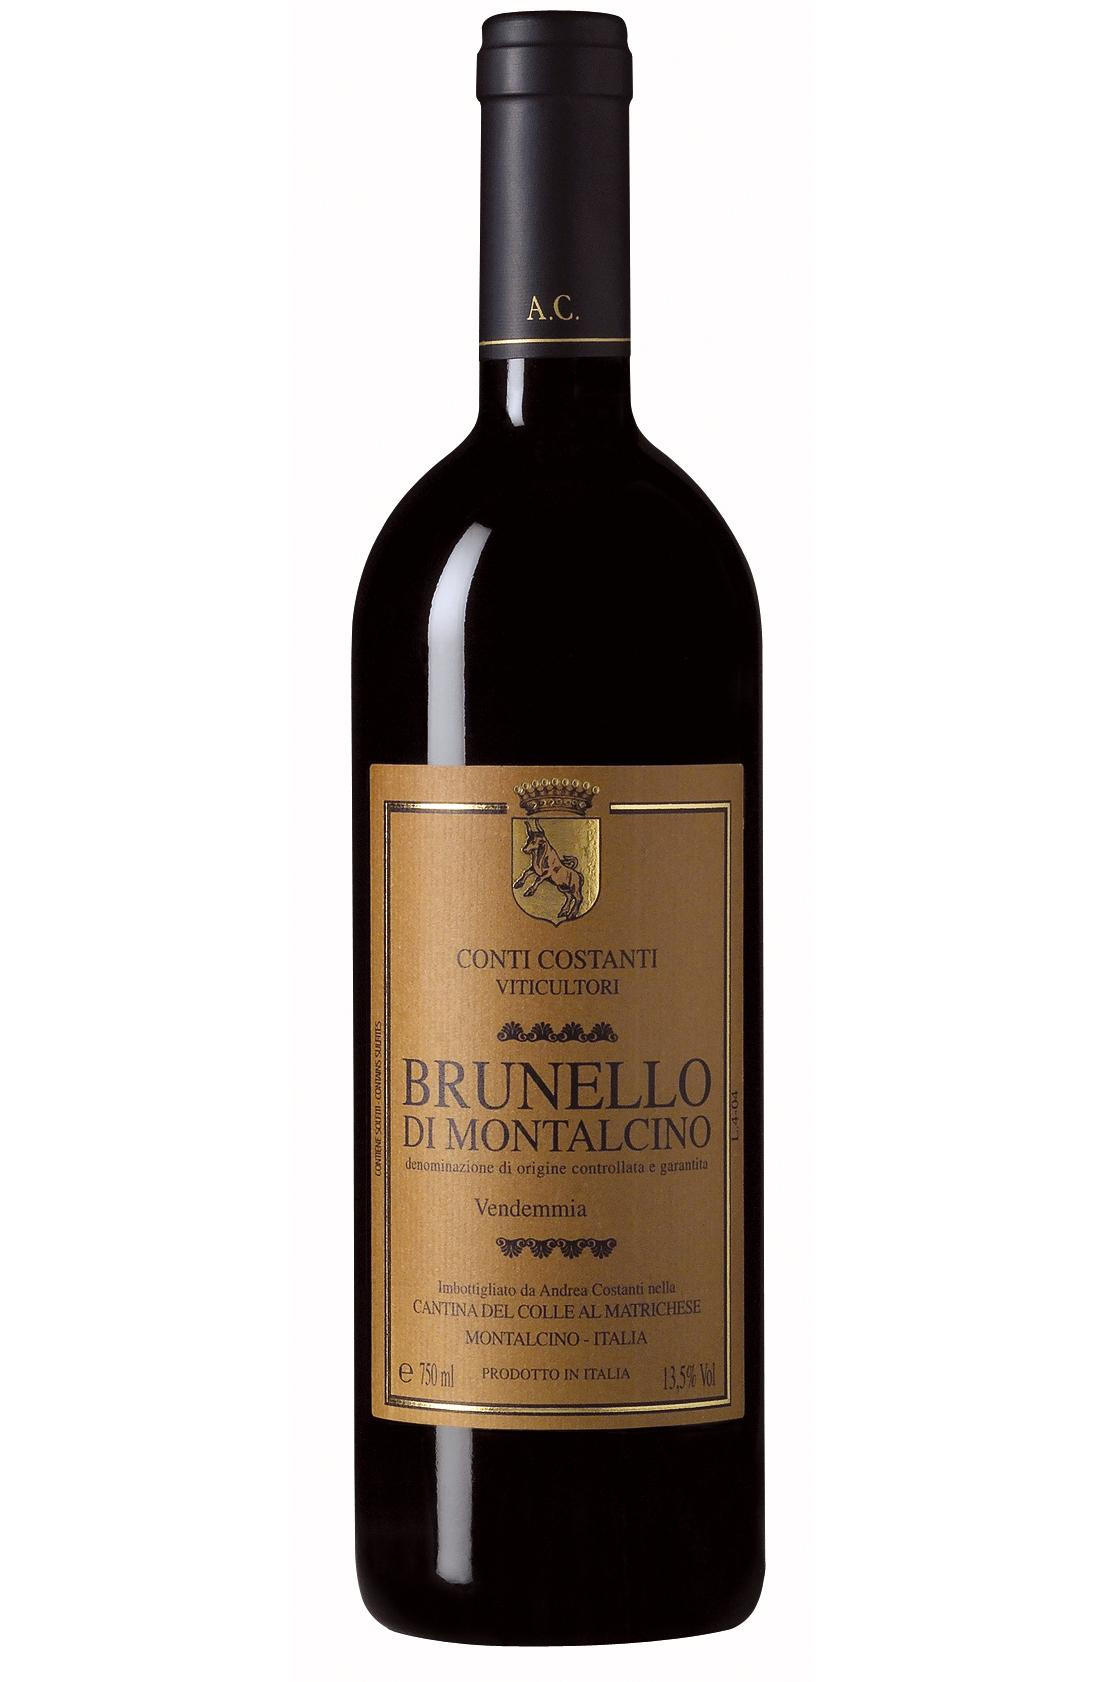 Buy 2017 Brunello di Montalcino, Conti Costanti, Tuscany, Italy Wine